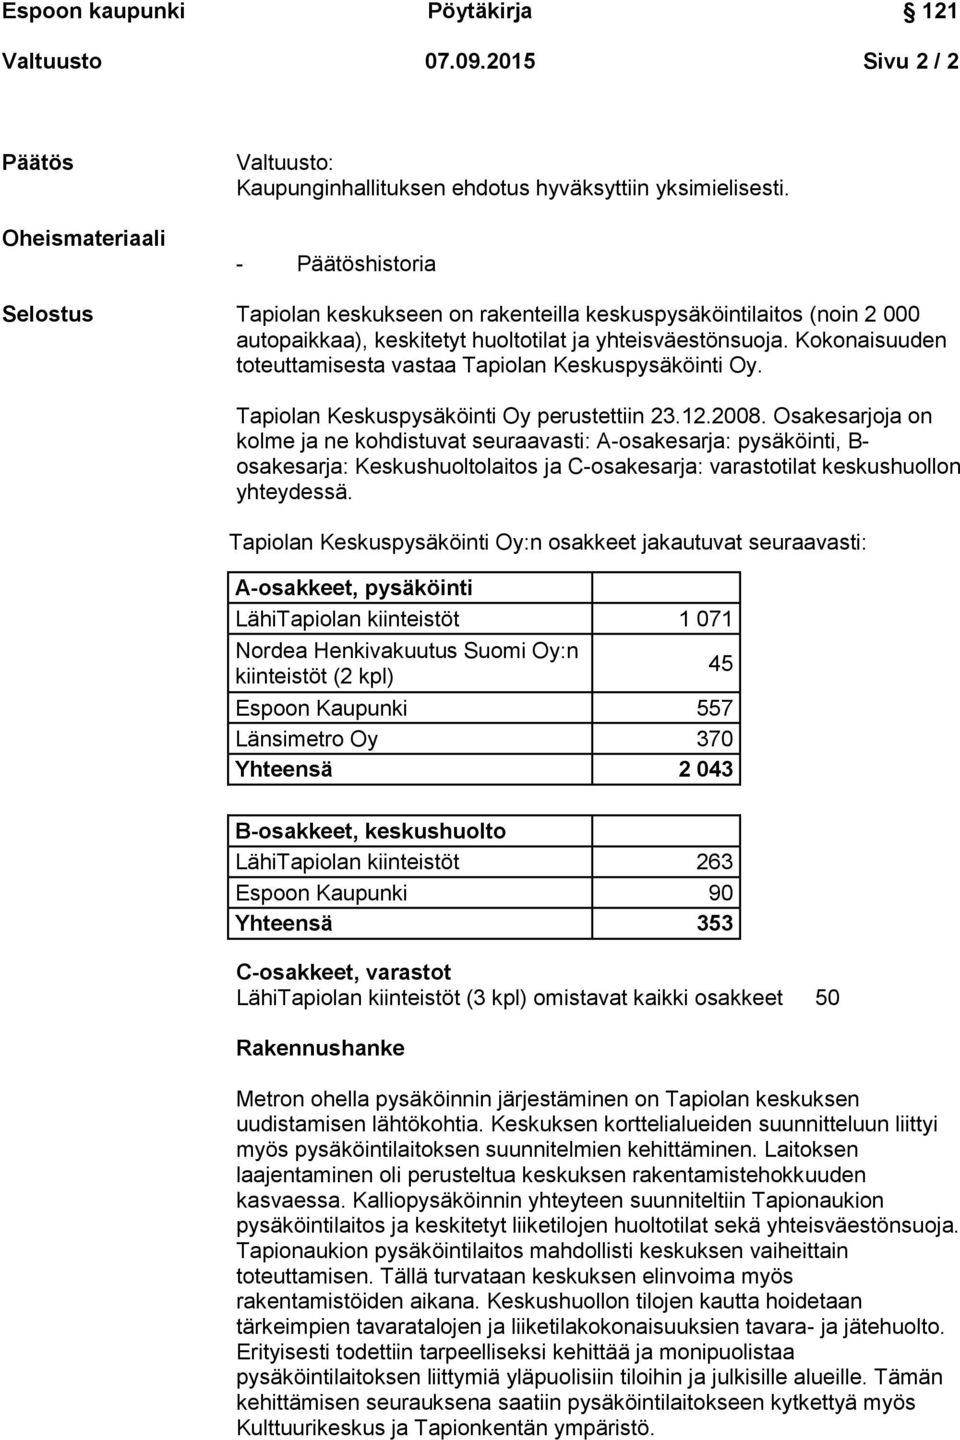 Kokonaisuuden toteuttamisesta vastaa Tapiolan Keskuspysäköinti Oy. Tapiolan Keskuspysäköinti Oy perustettiin 23.12.2008.